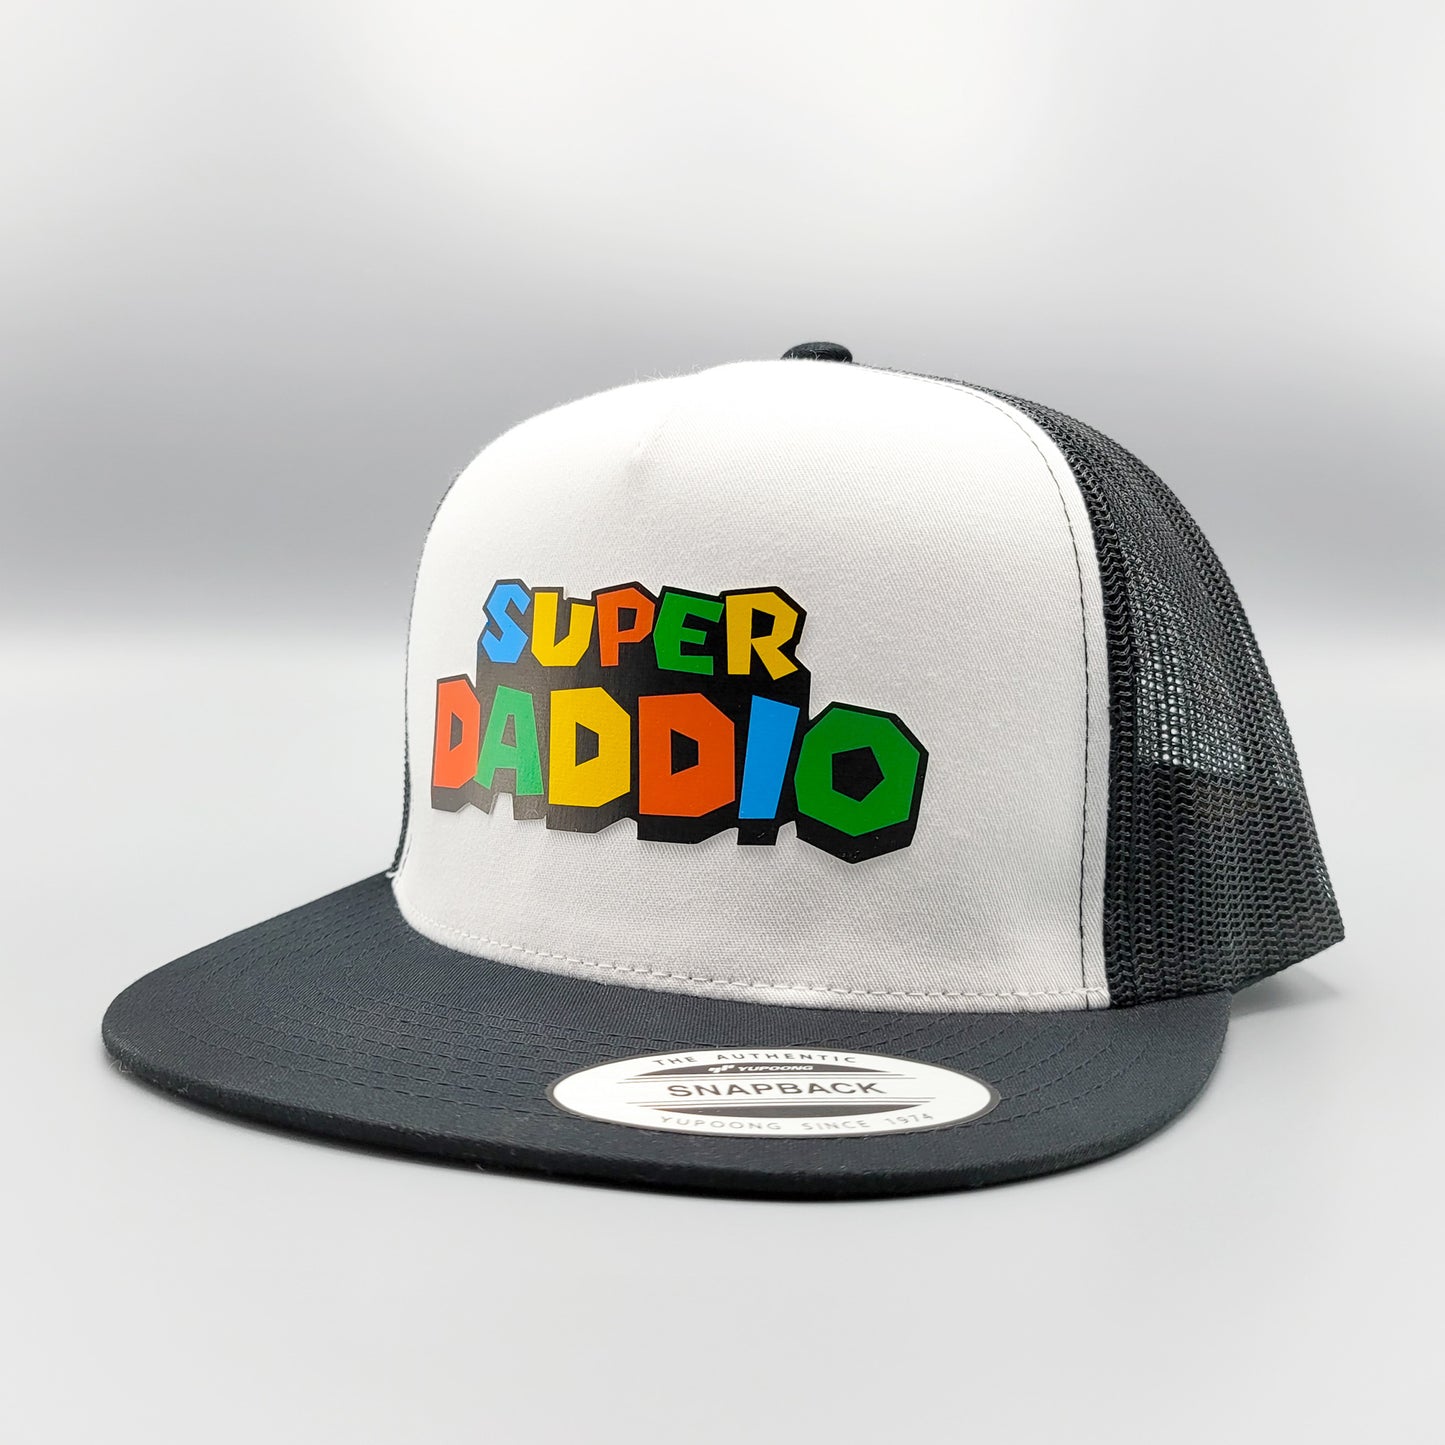 Super Daddio Trucker Hat